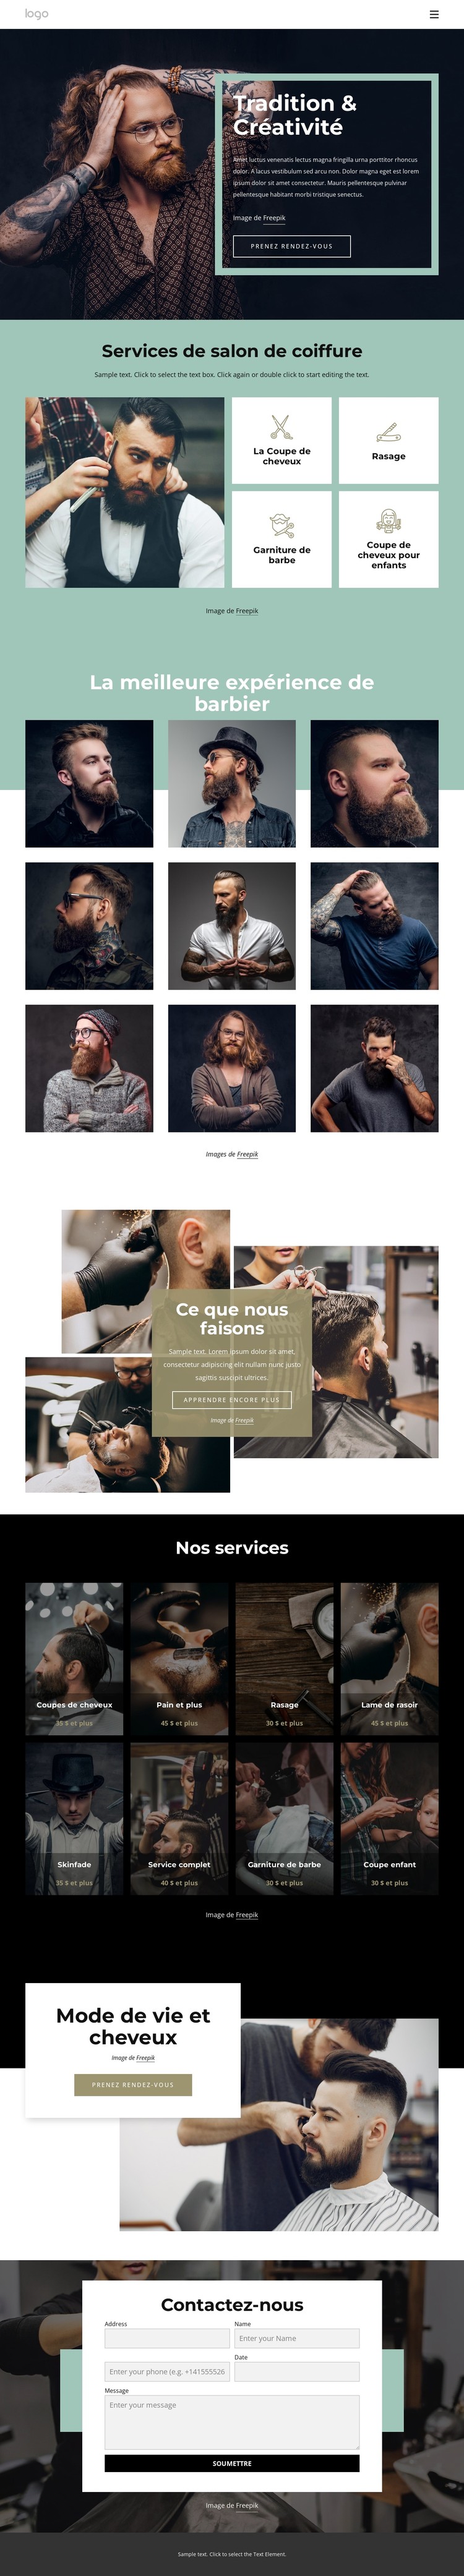 Salon de coiffure public Modèle CSS